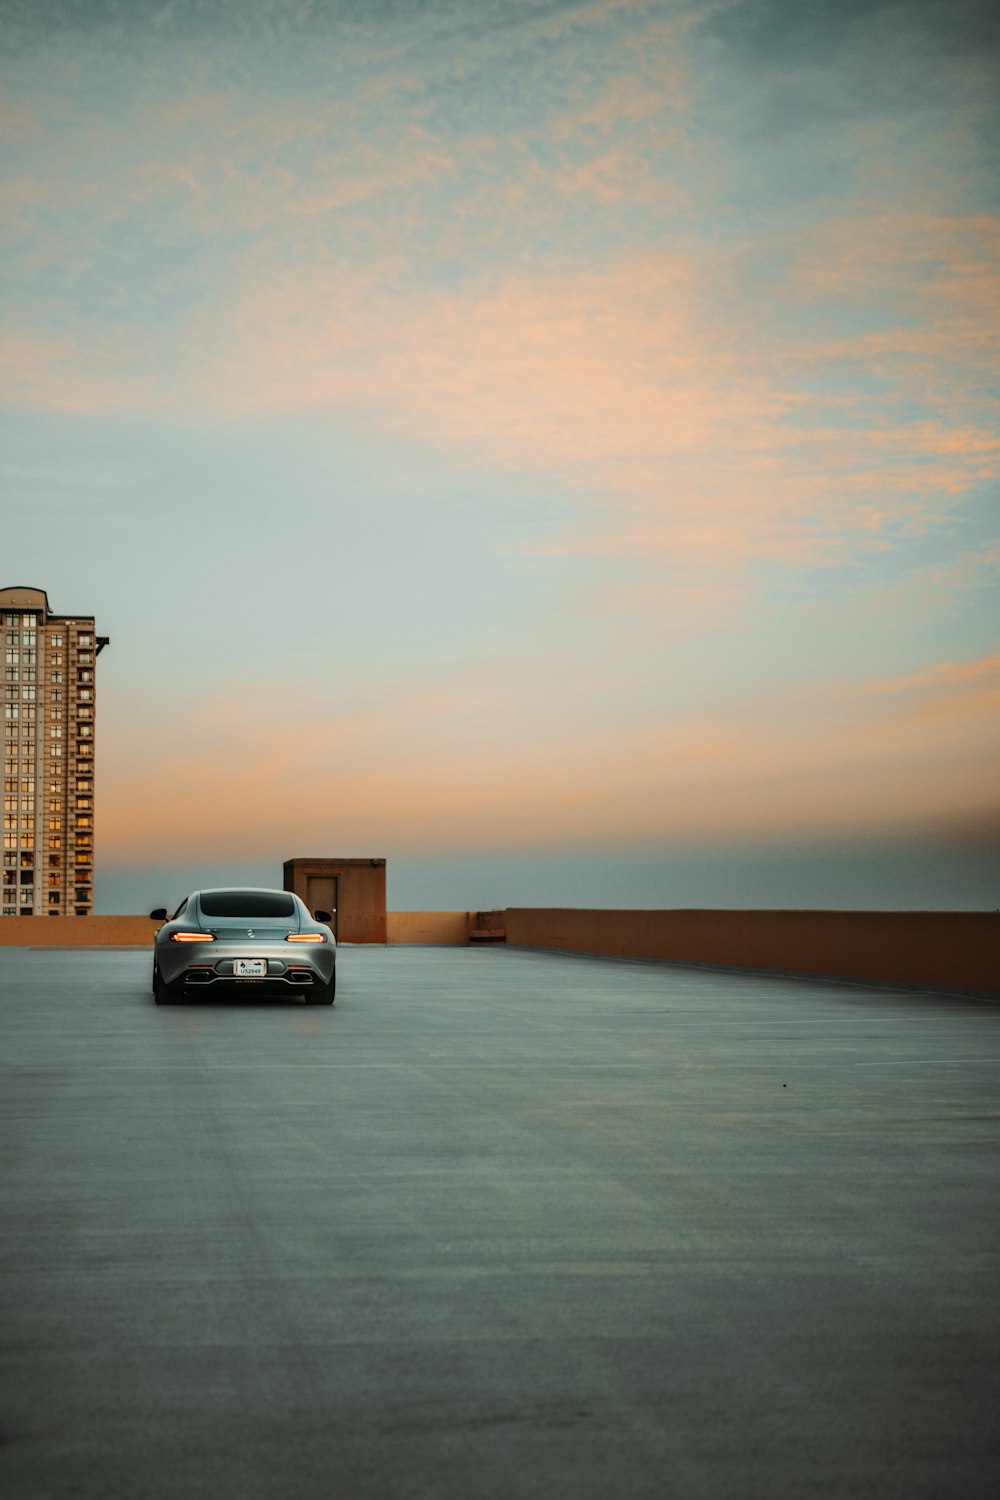 voiture blanche sur un sol enneigé au coucher du soleil